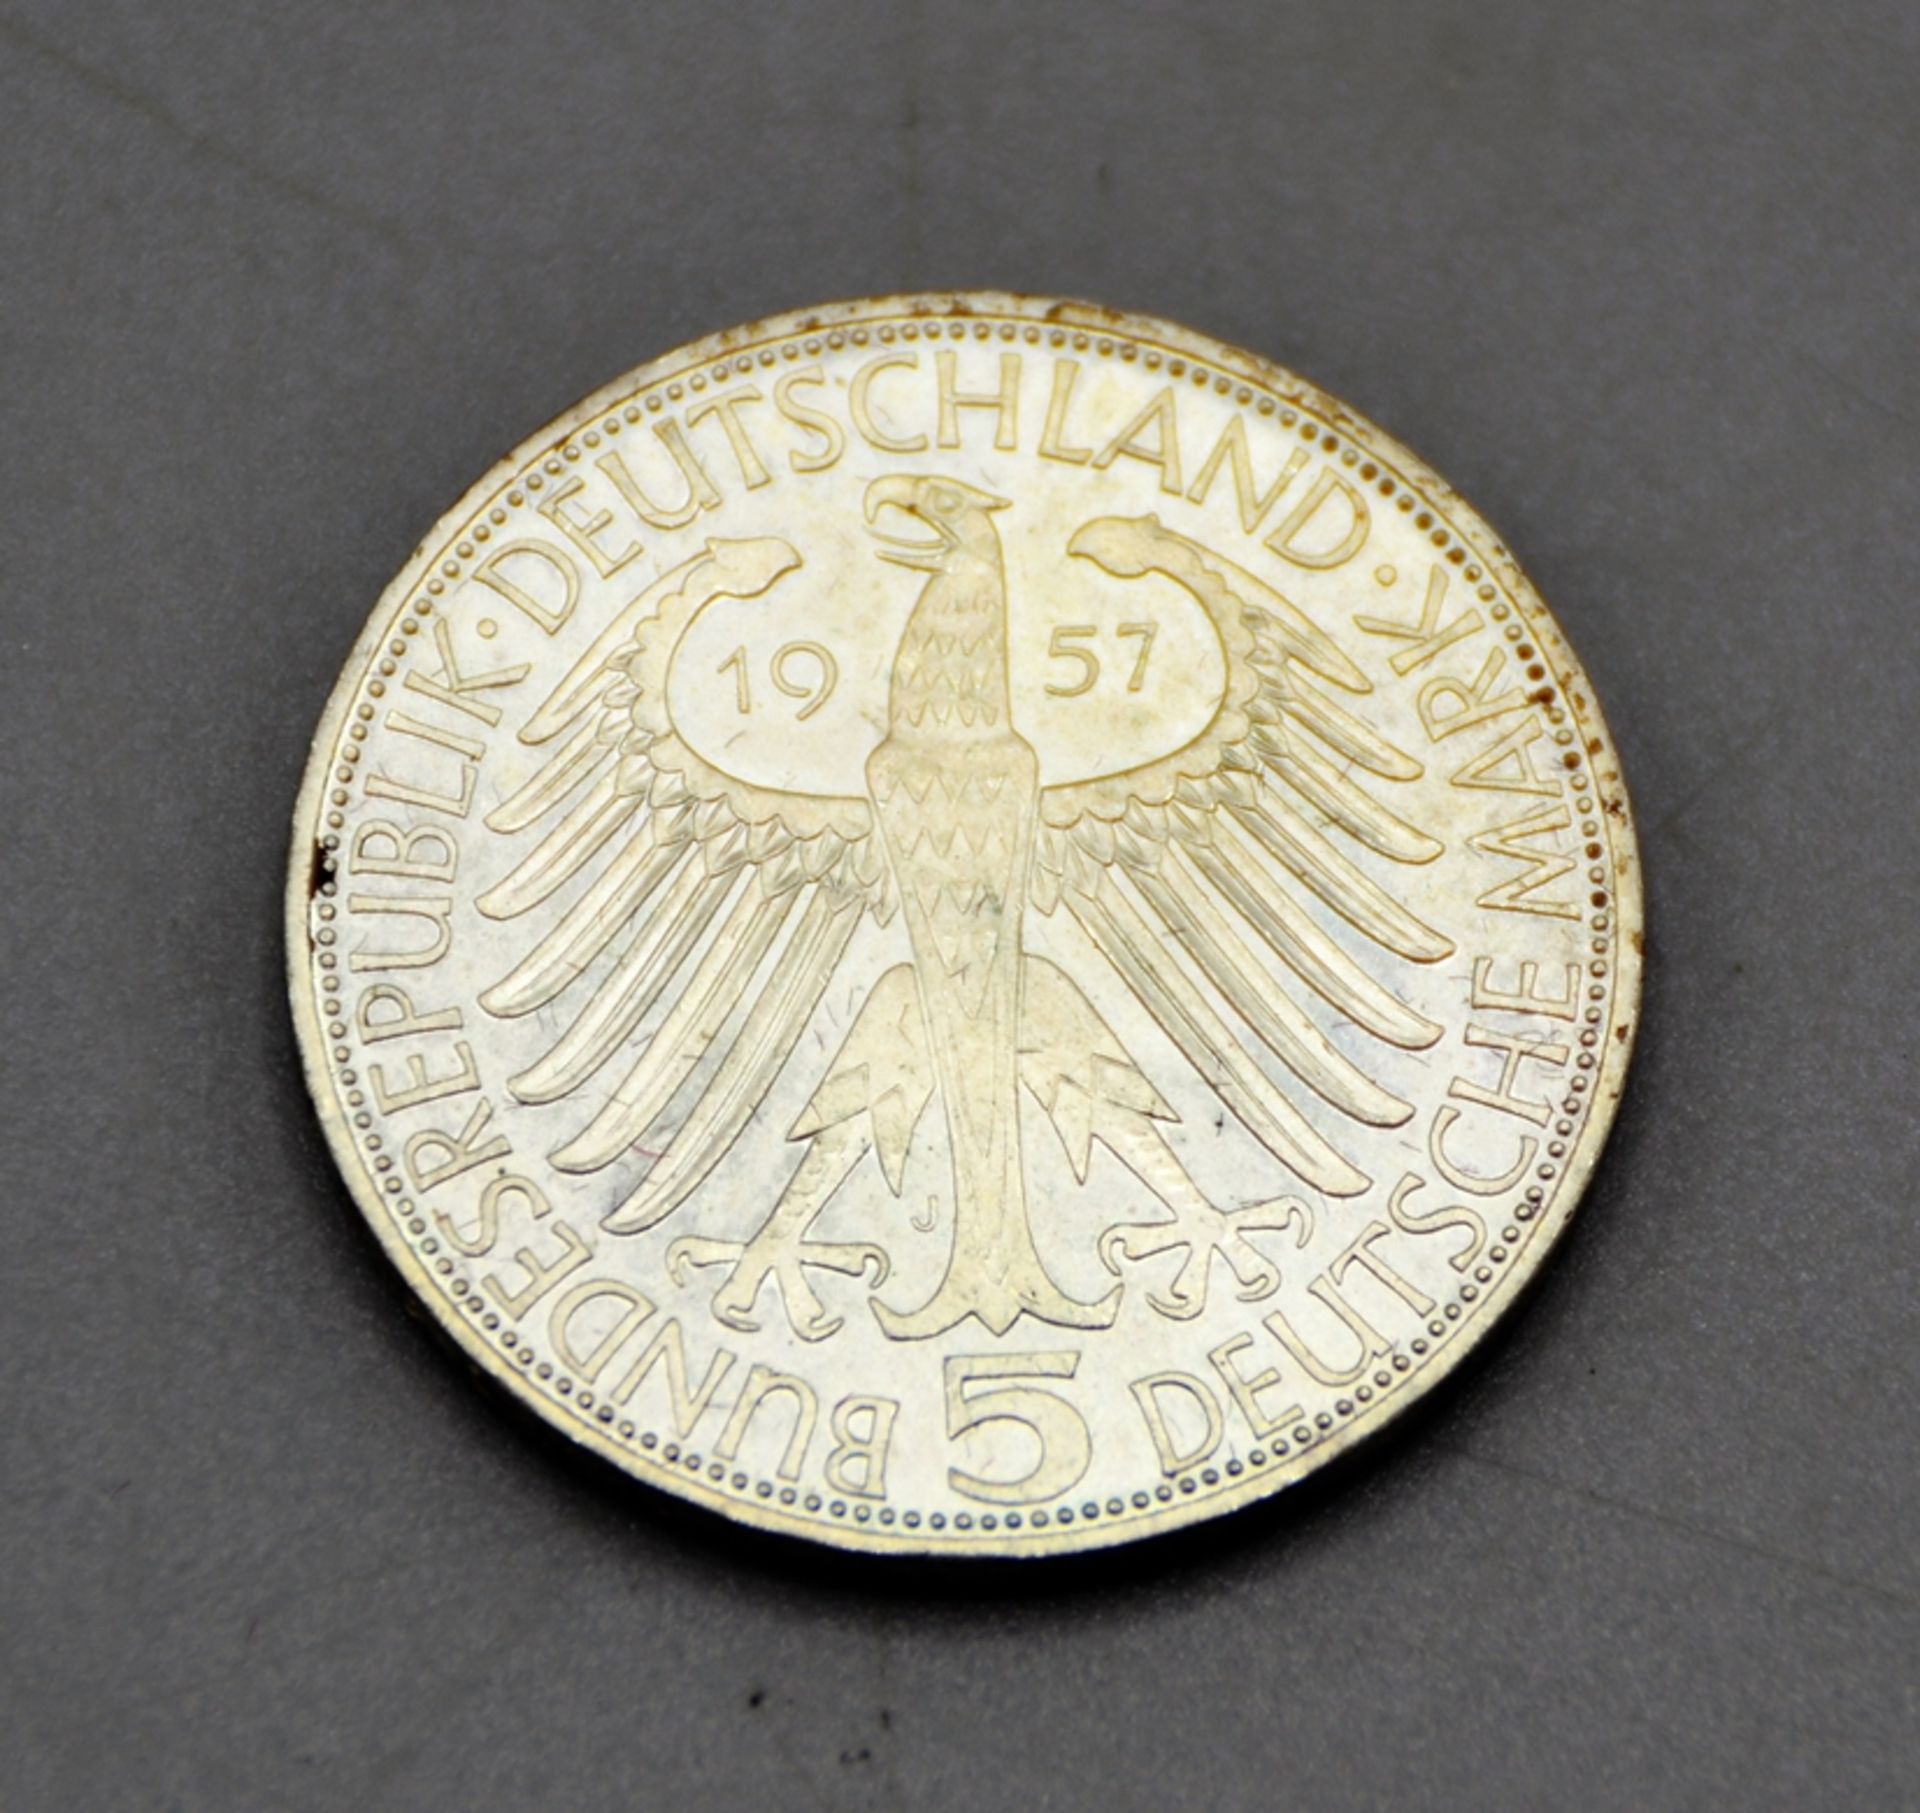 5 DM 1957 J Joseph Freiherr von Eichendorff Gedenkmünze Silber, minimaler Randfehler (kaum sichtbar - Bild 2 aus 2